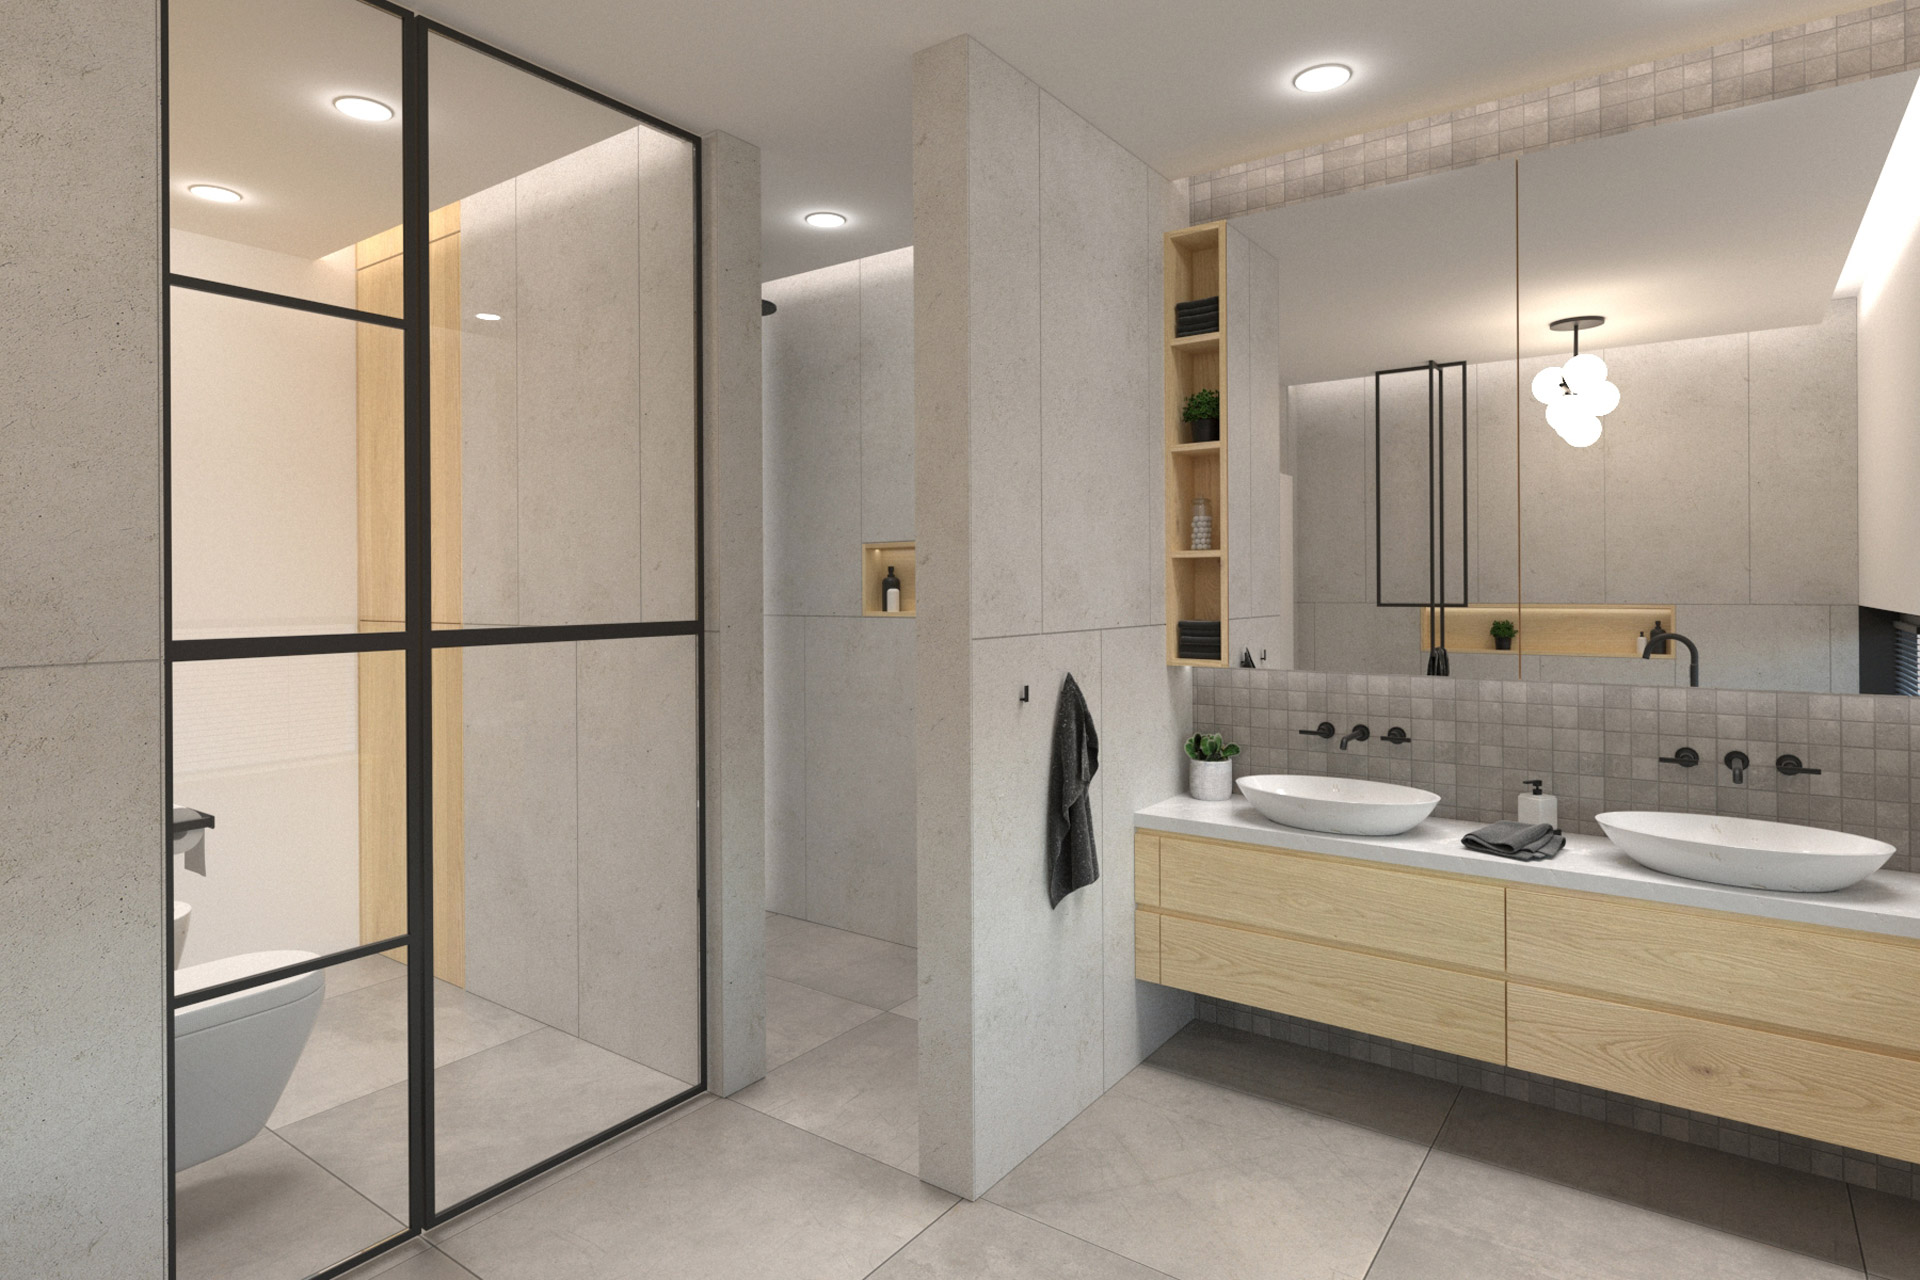 Hanák Návrh moderního interiéru Koupelna